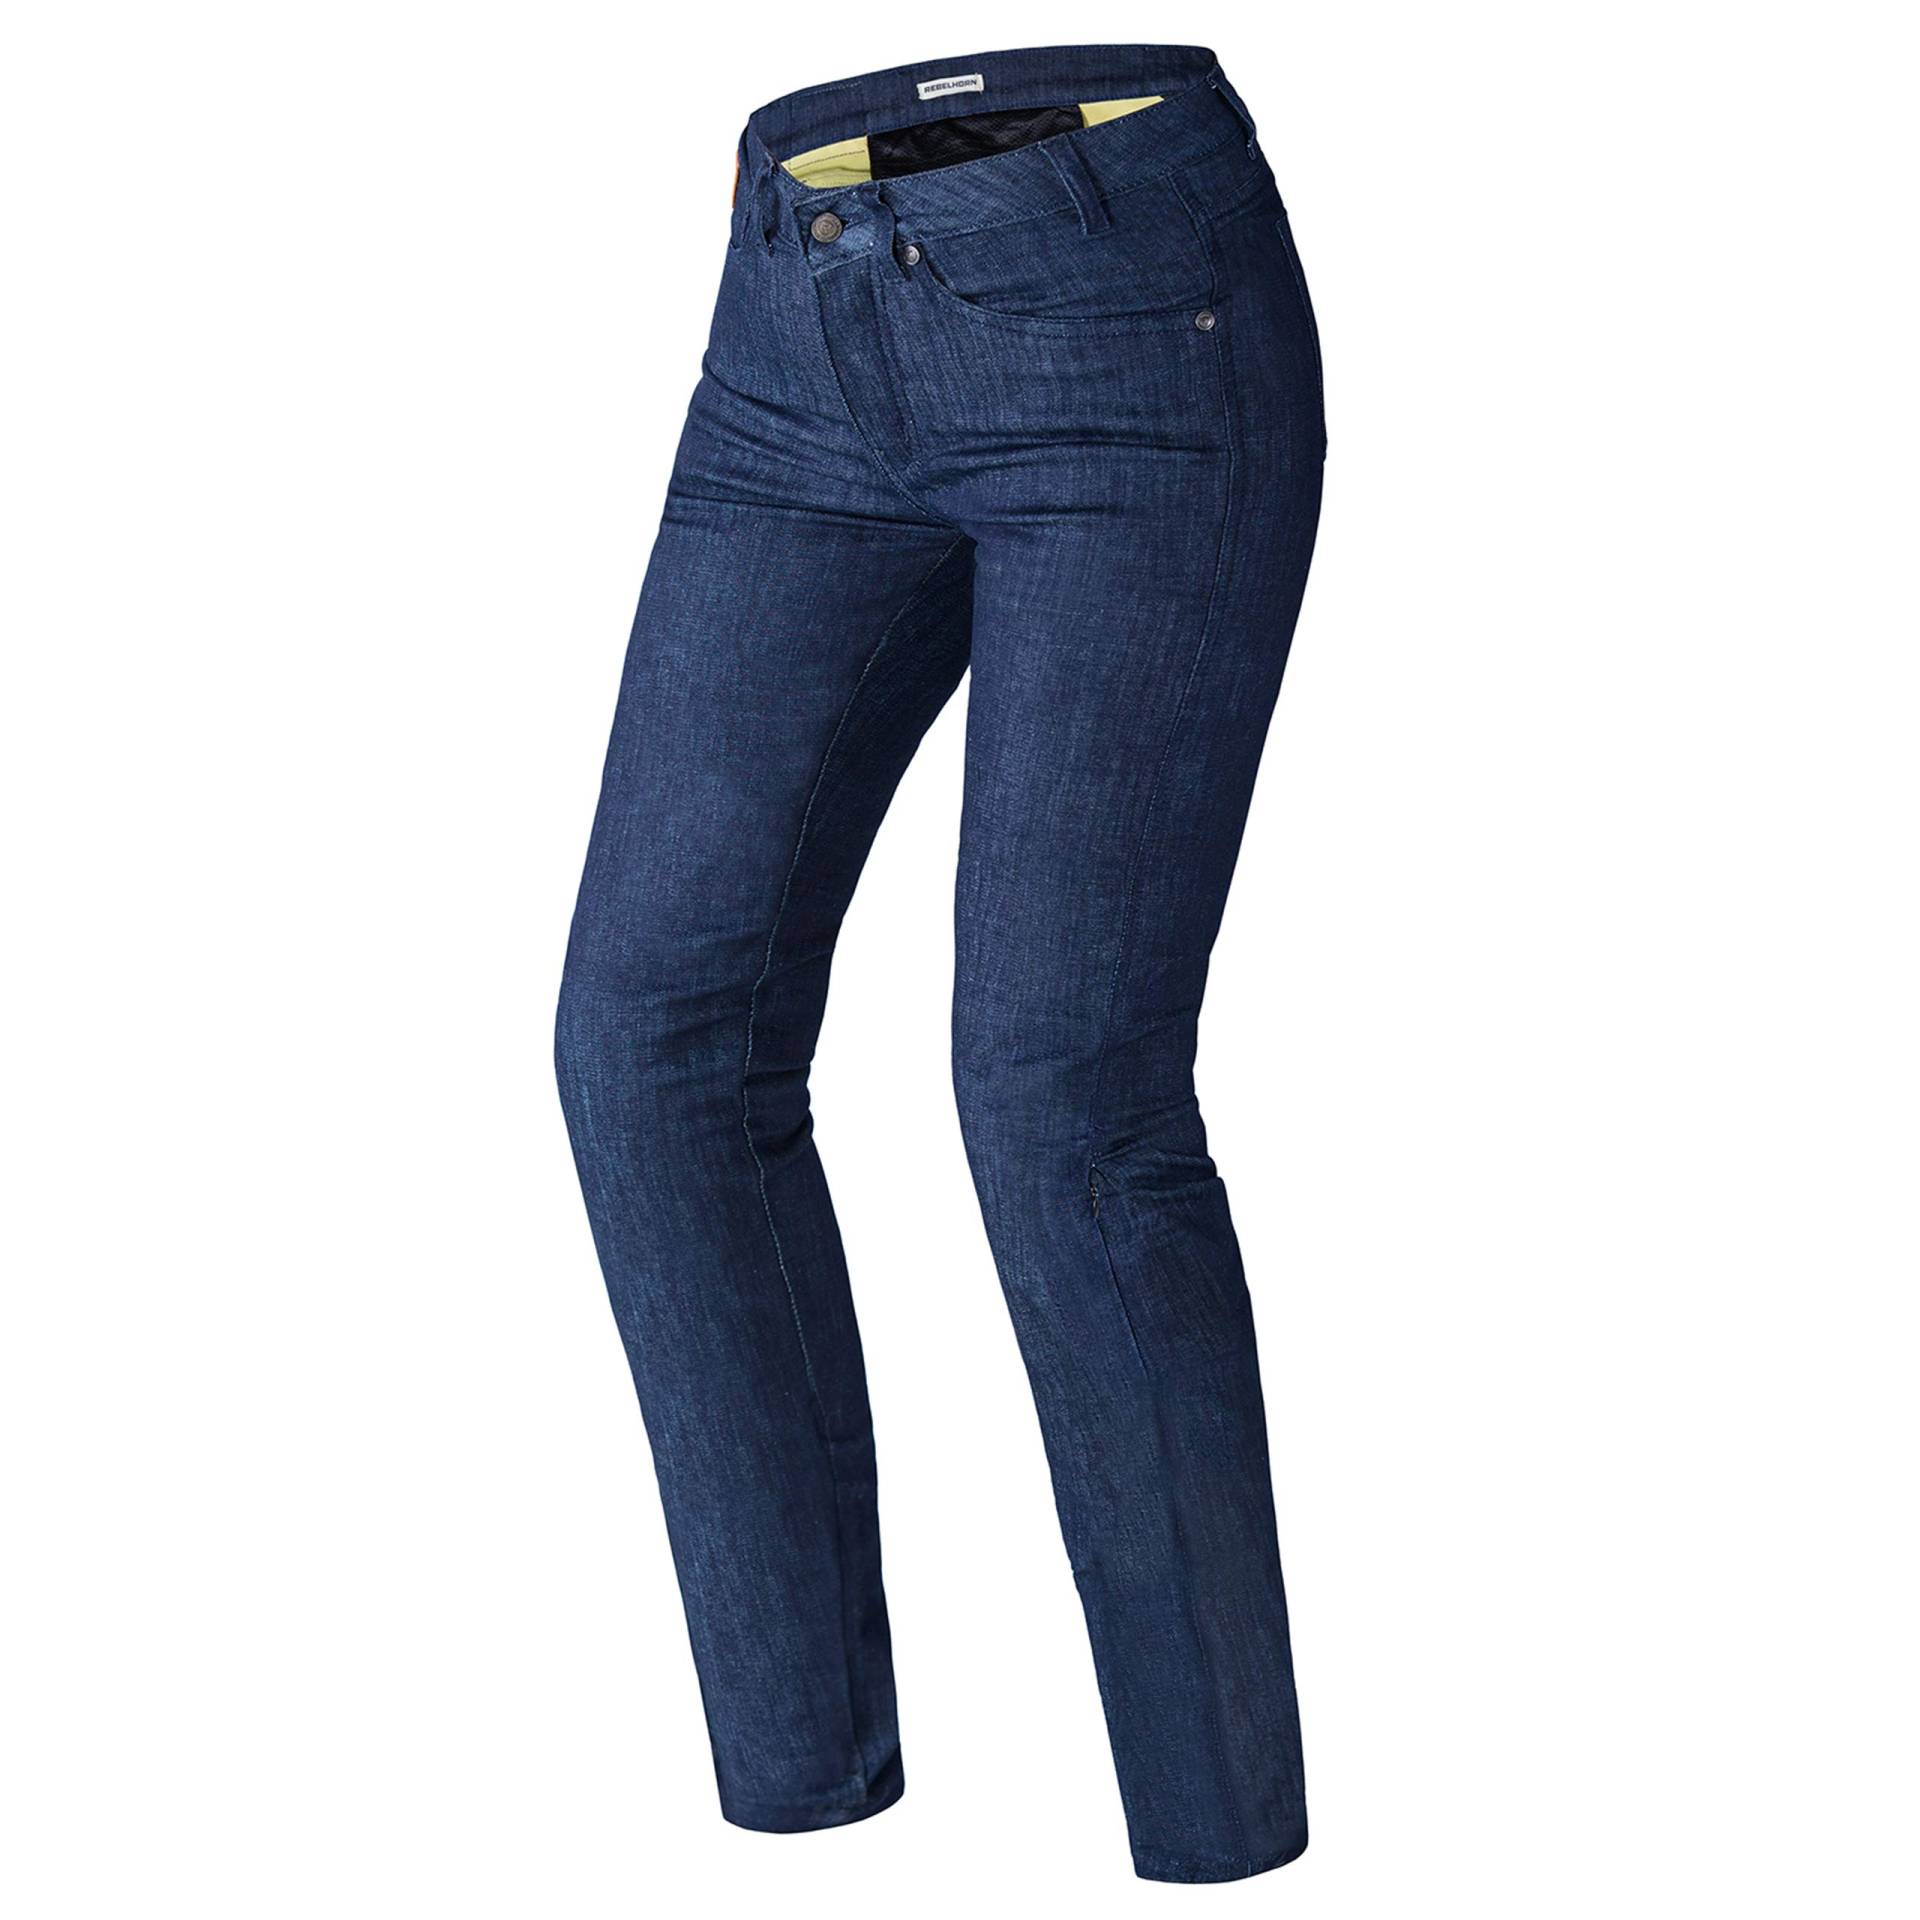 REBELHORN Classic II Lady Motorradhose Jeans für Frauen CE-Level 2 Knie- und Hüftprotektoren Dupont Kevlar Panels Reflektierende Elemente 4 Taschen CE-Zertifiziert von REBELHORN